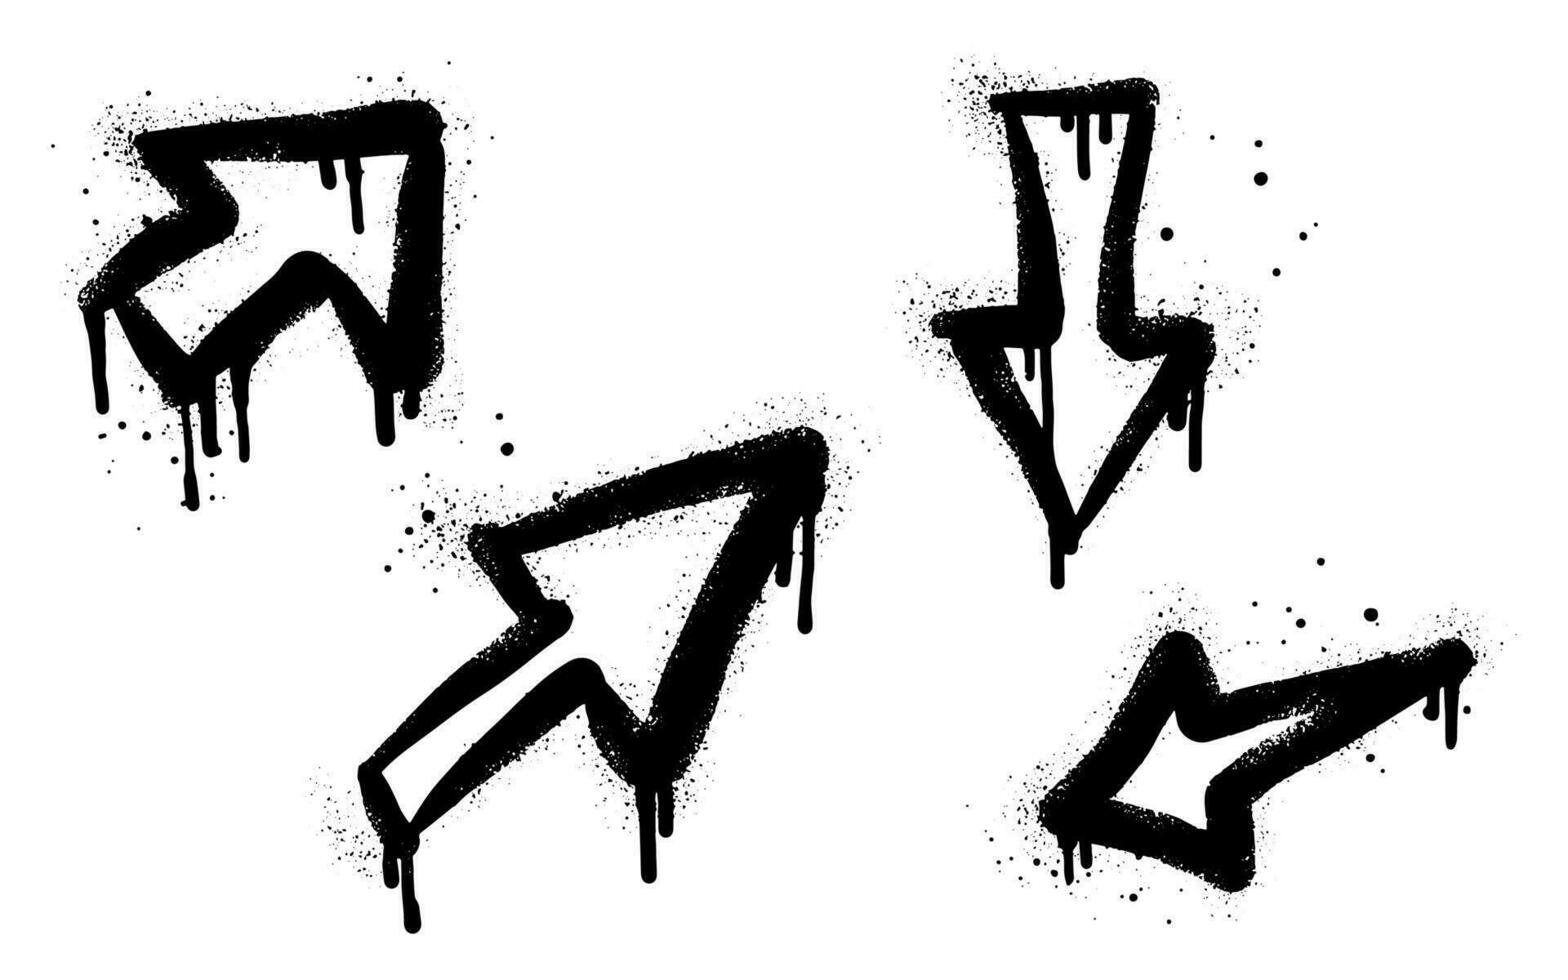 samling av spray målad graffiti pil i svart över vit. pil riktning droppa symbol. isolerat på vit bakgrund. vektor illustration